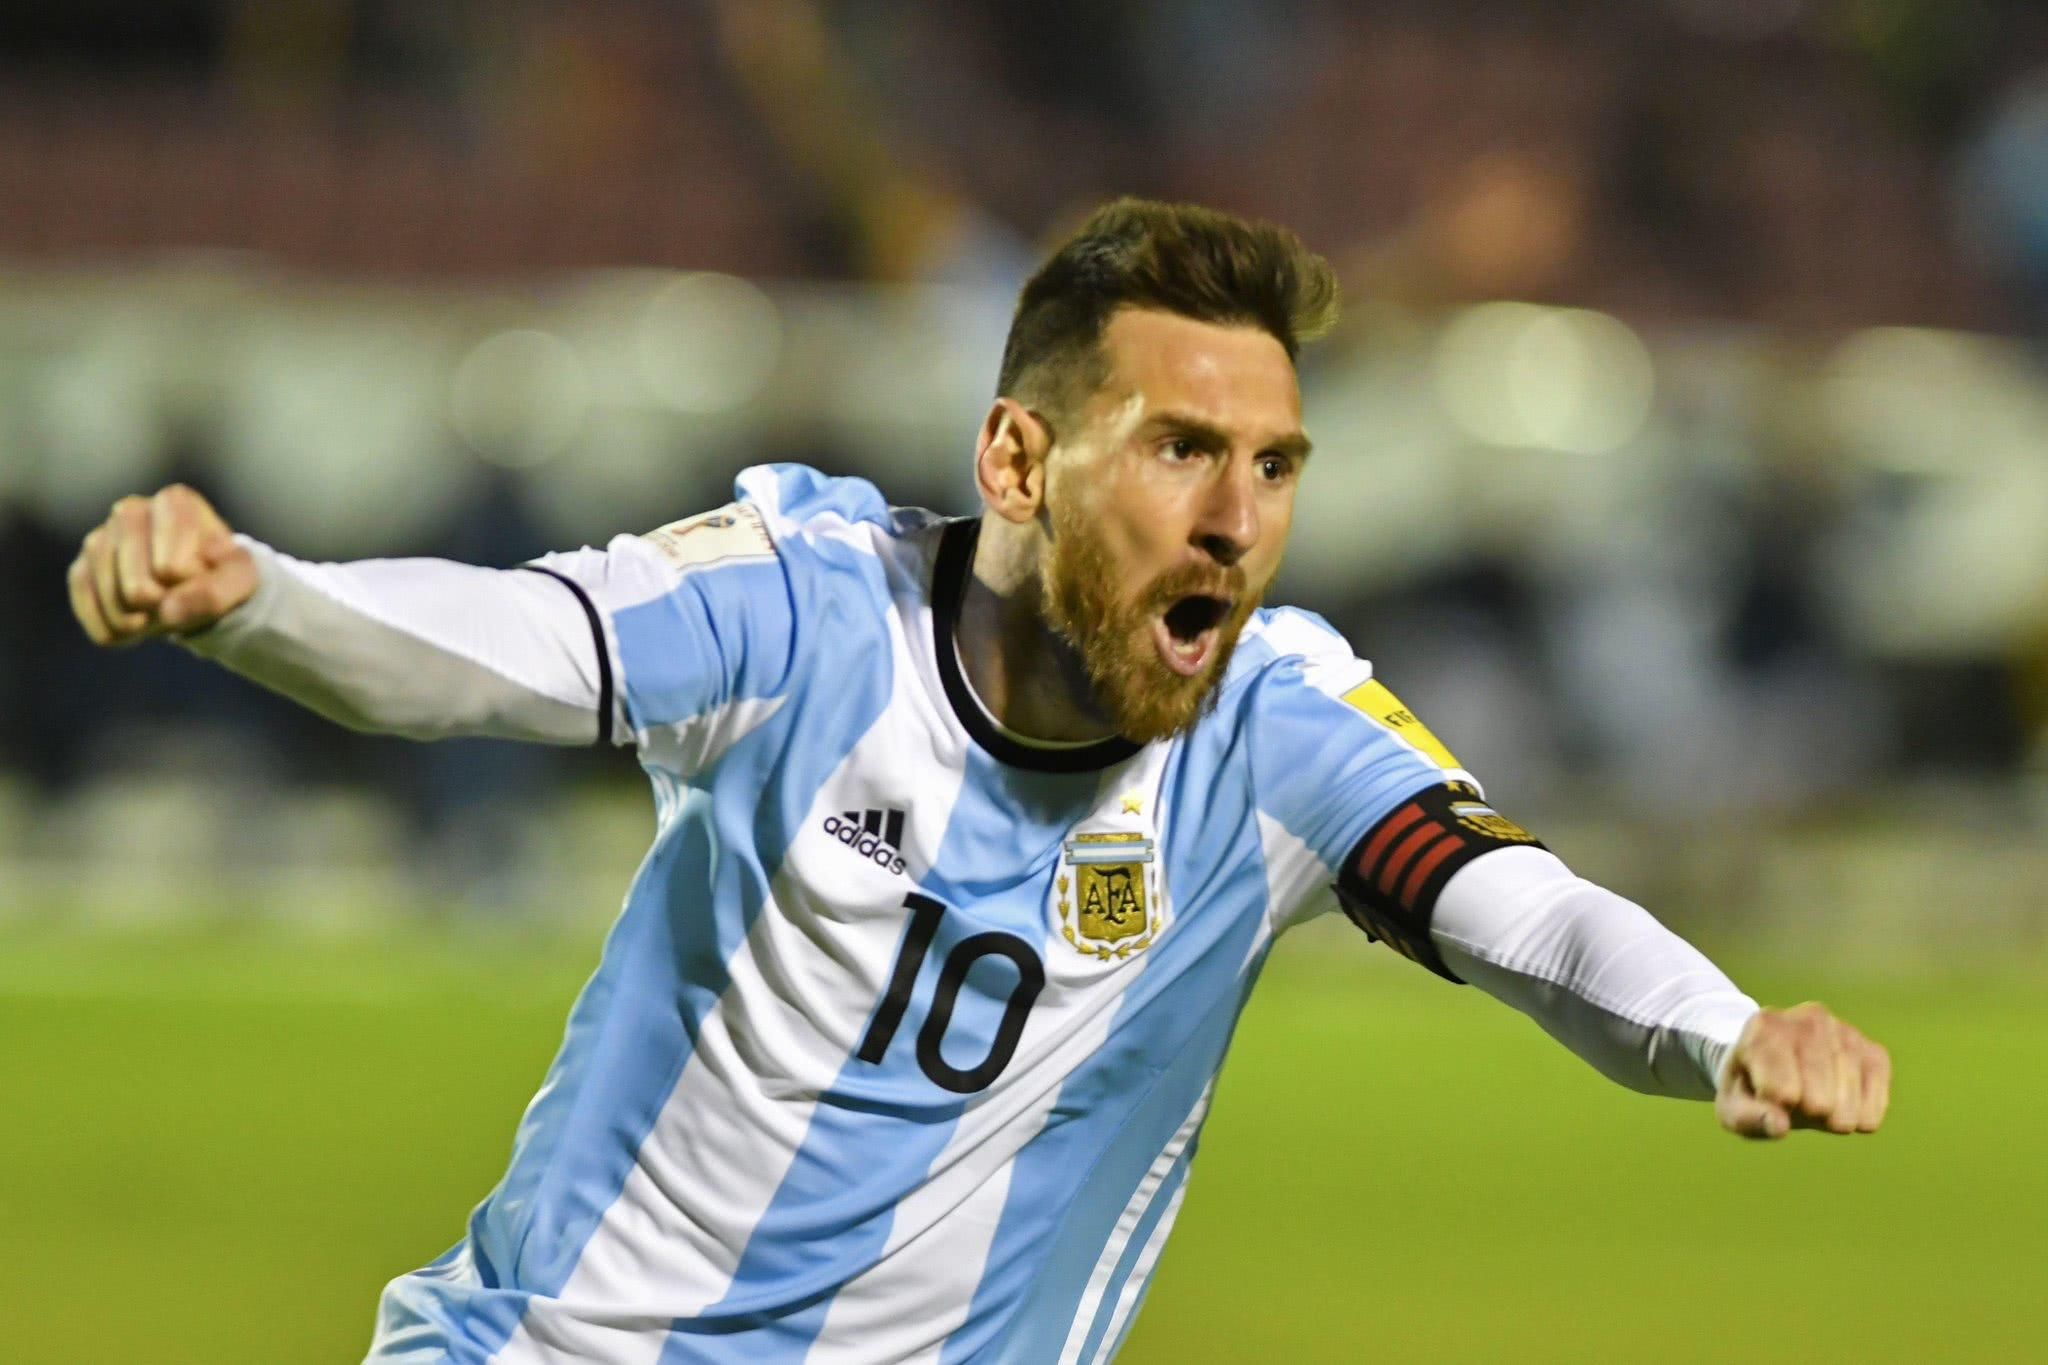 阿根廷足球队,阿根廷世界杯,小组赛,世界排名,大力神杯